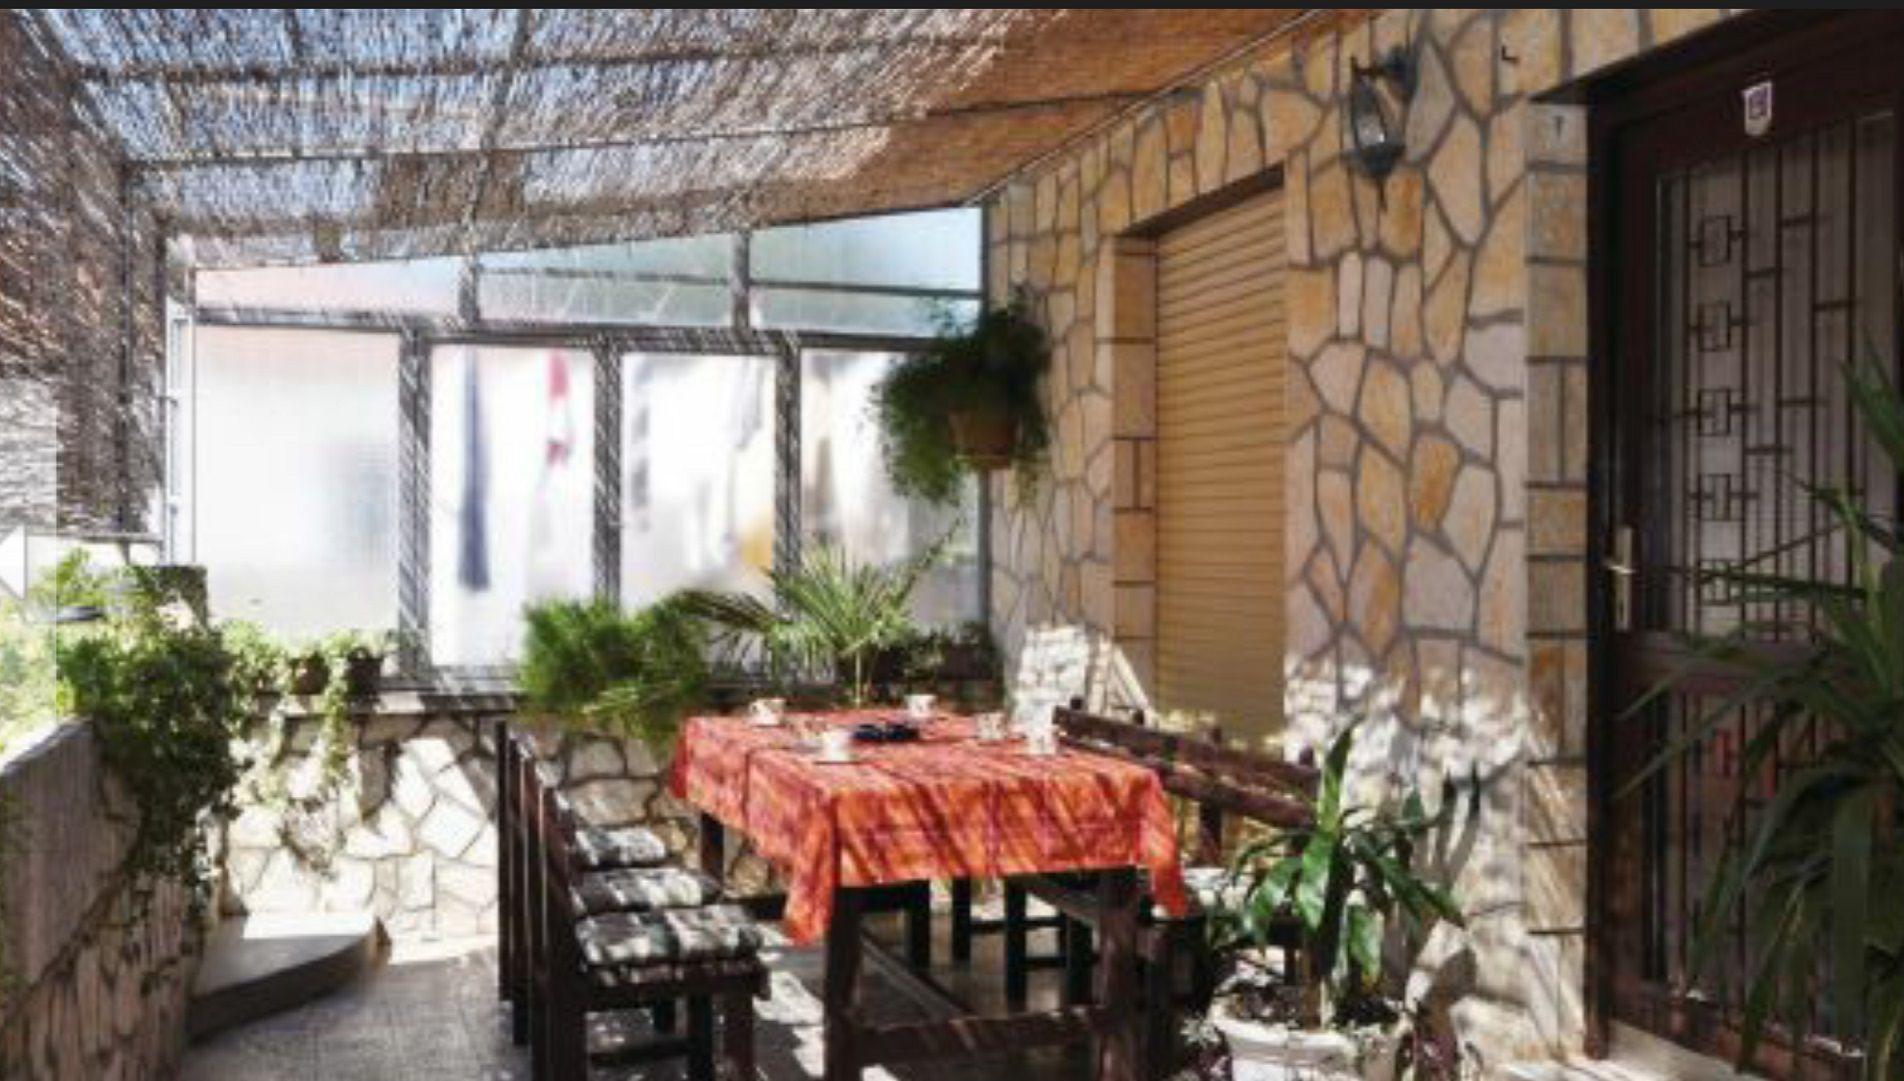 Komfortable Wohnung in Zadar mit Terrasse und Gril Ferienhaus in Kroatien